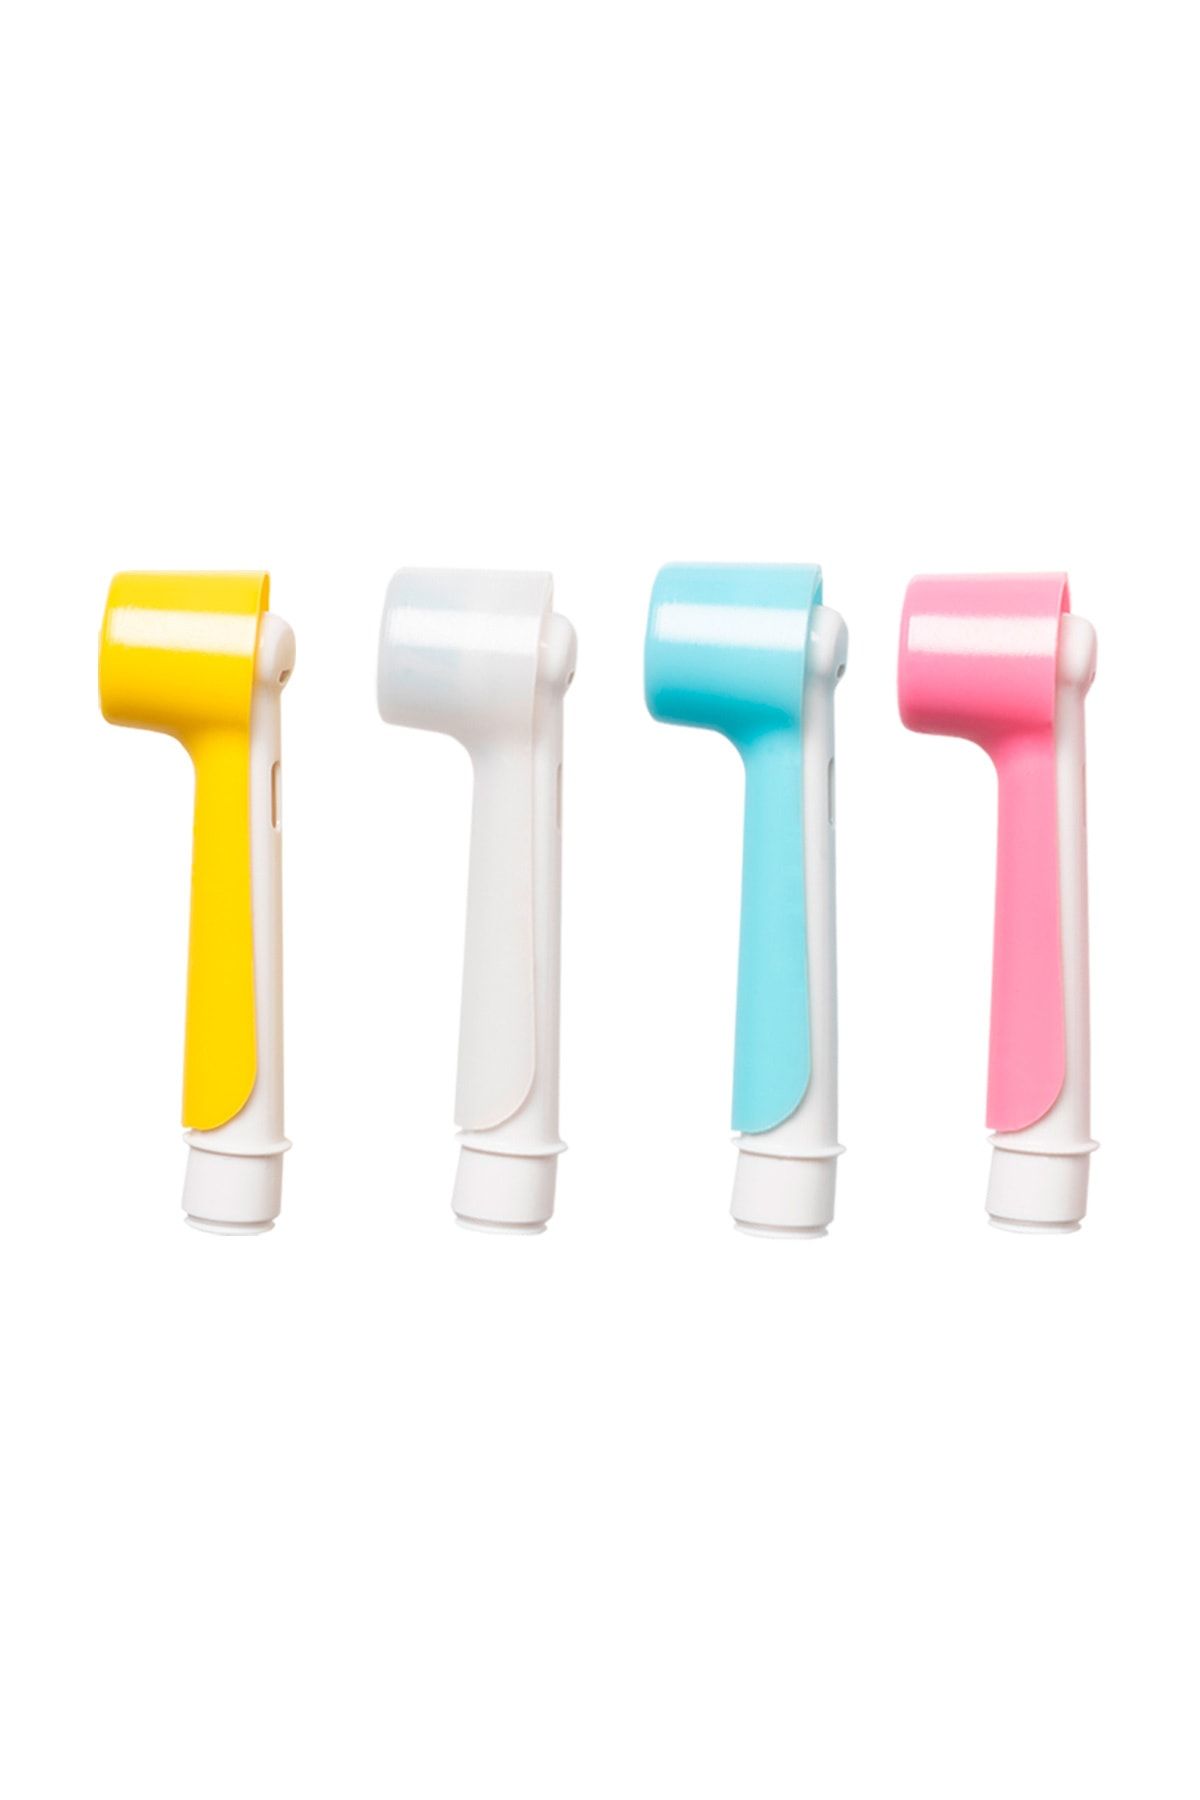 Mudily Oral-b Şarjlı Ve Pilli Diş Fırçaları Için Uyumlu Renkli 4 Adet Kapak